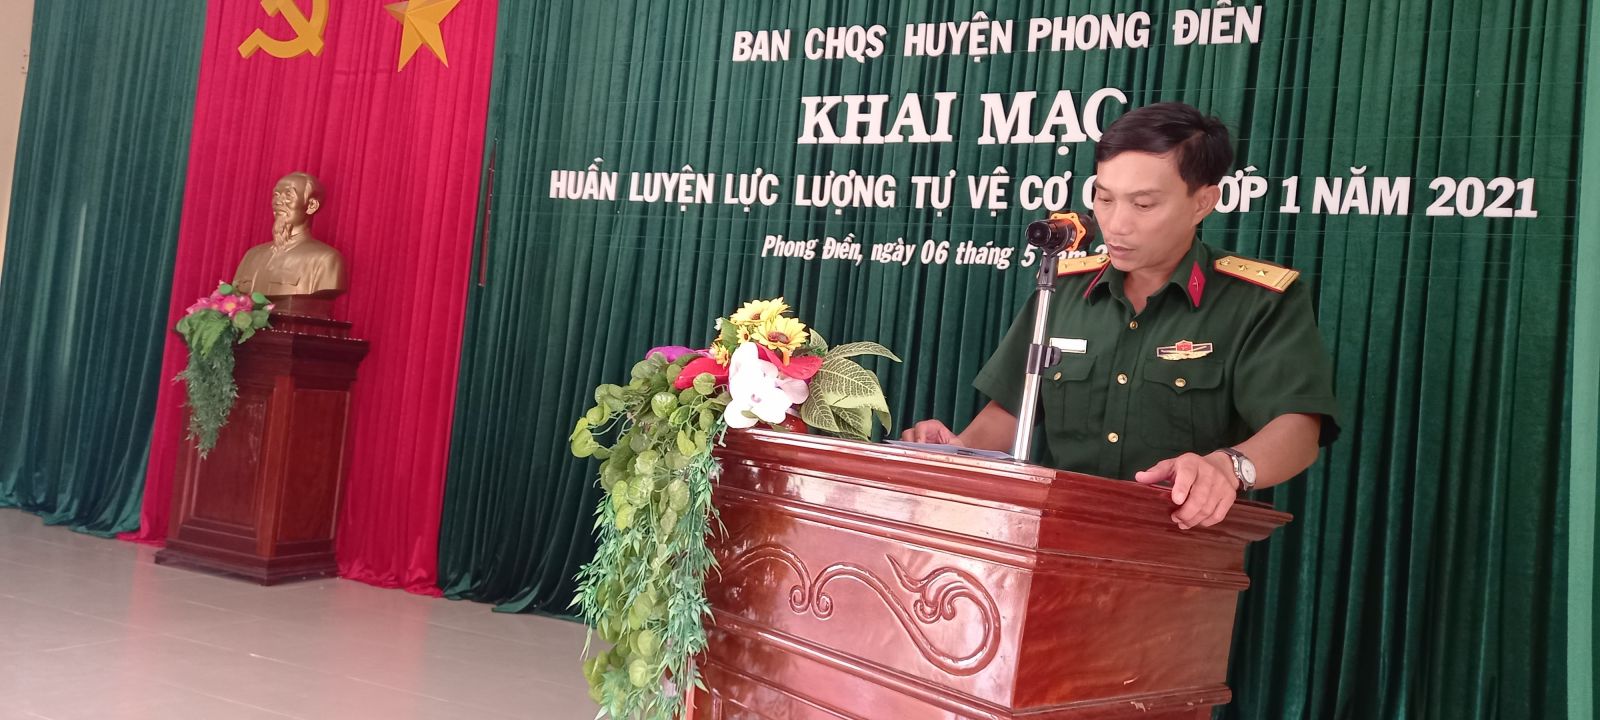 Đồng chí Trung tá Trần Vũ Huyến - Chính trị viên phó kiêm CNCT  phát biểu khai mạc huấn luyện; Toàn cảnh buổi khai mạc huấn luyện